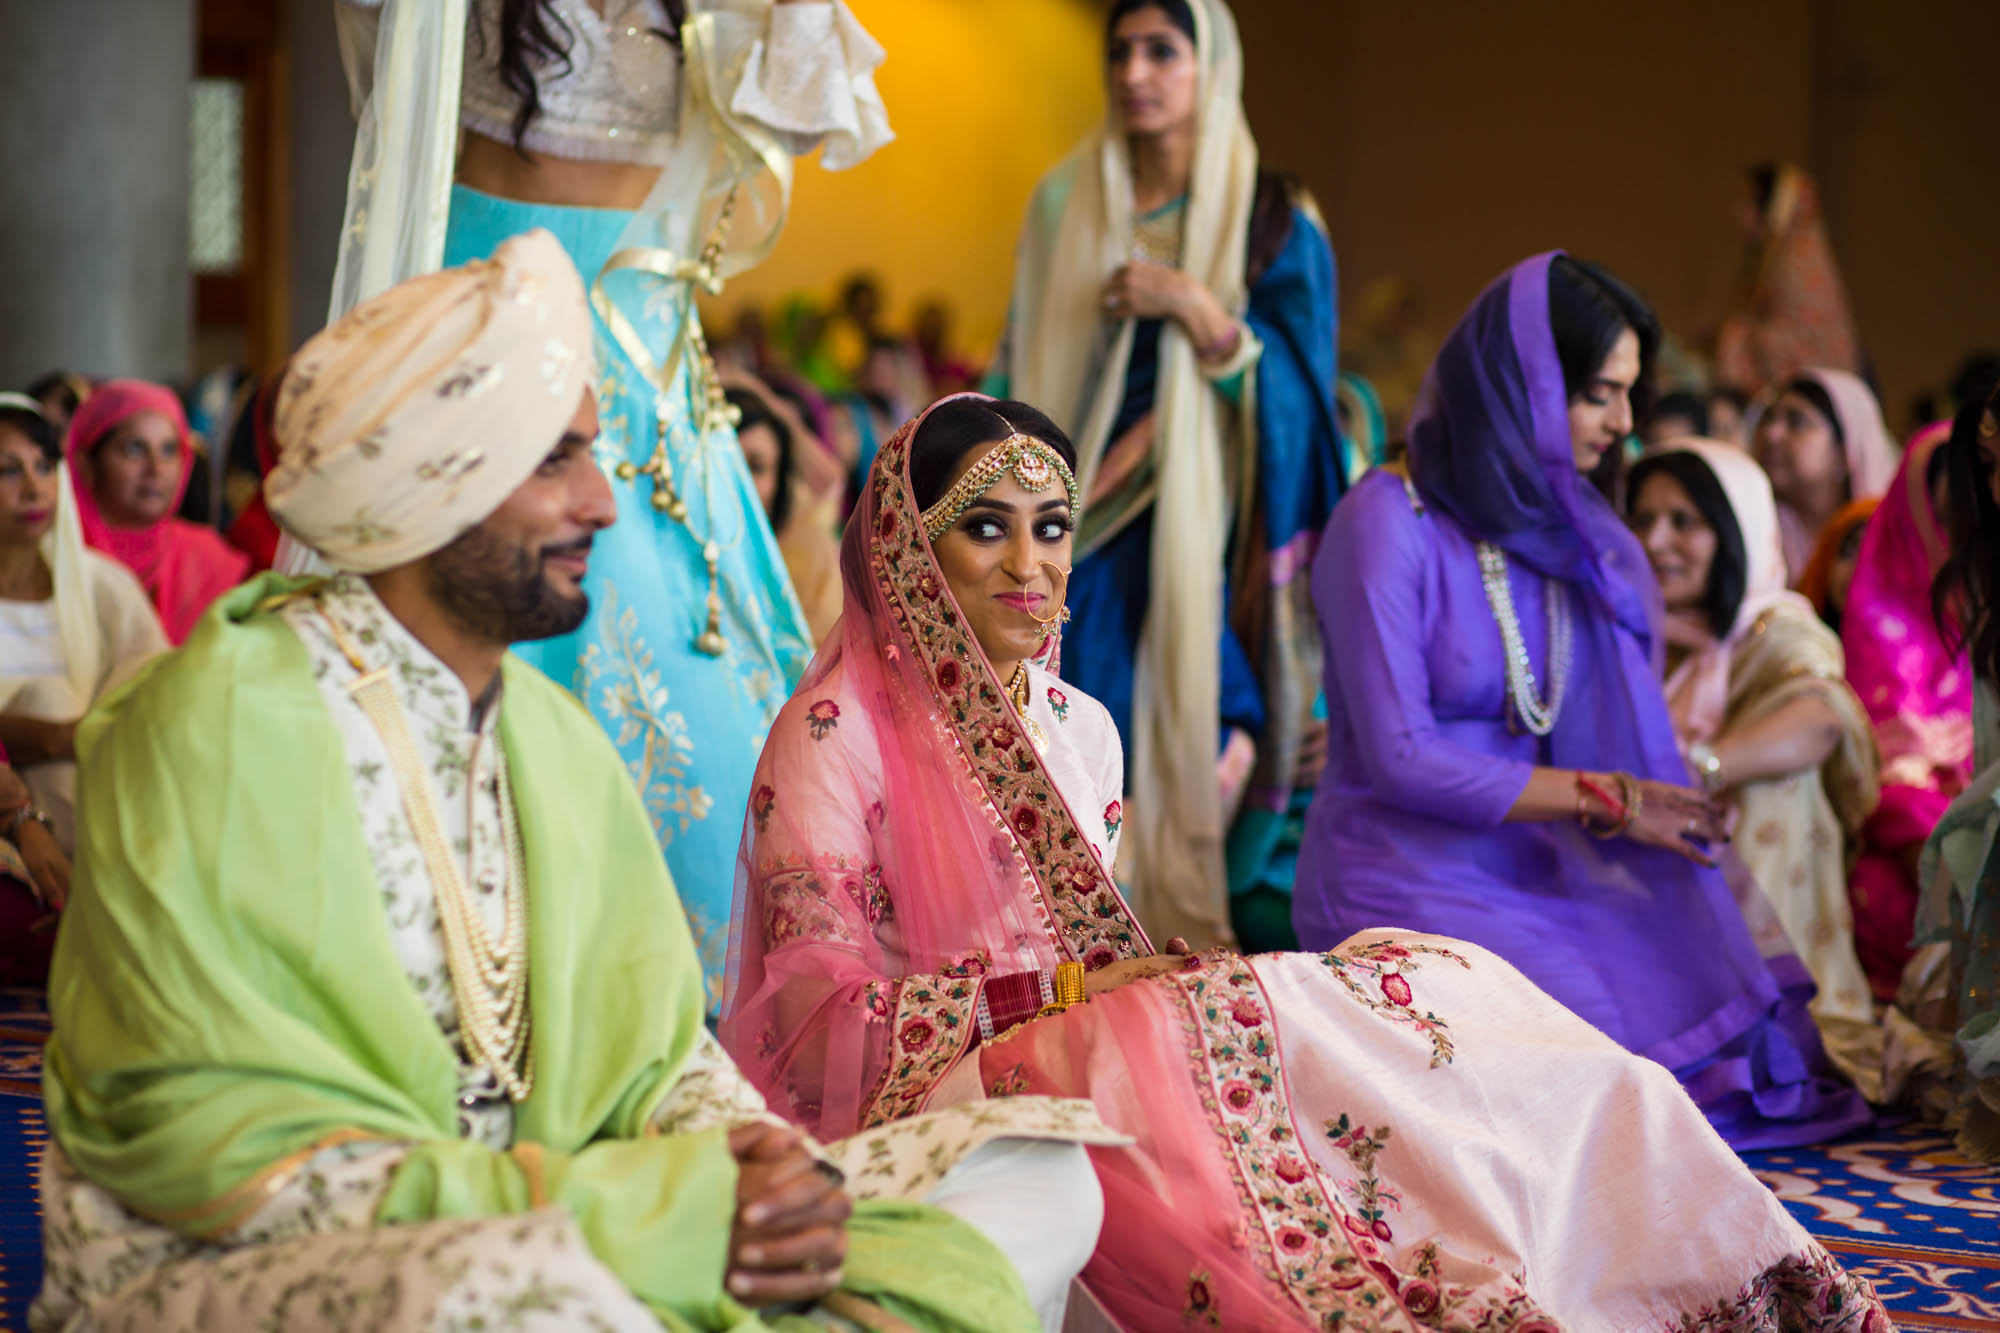 Sikh wedding photographer London, Gurdwara Sri Guru Singh Sabha